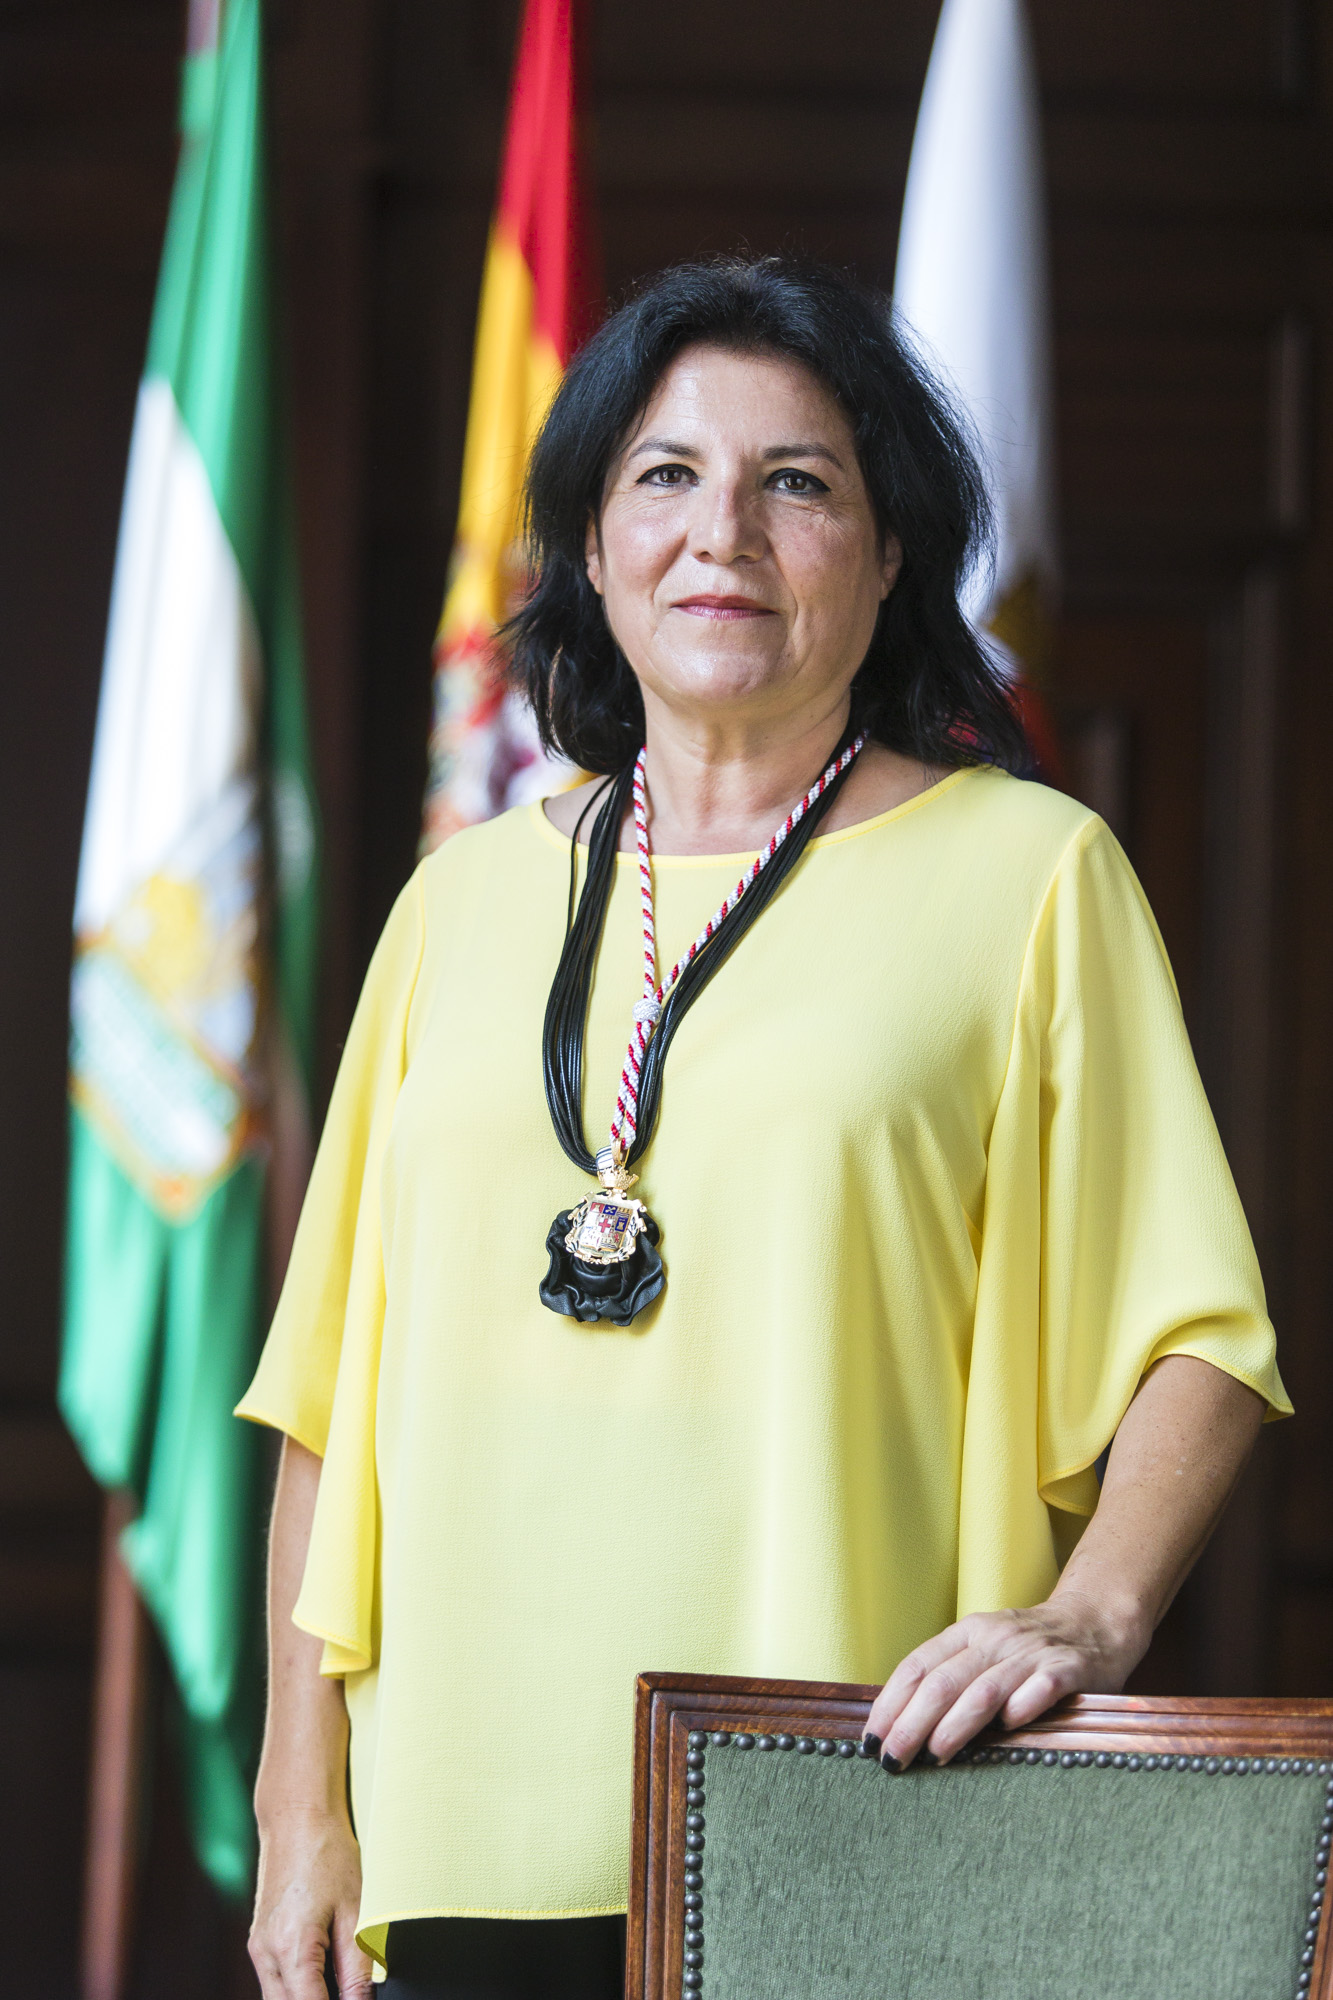 María González Martínez